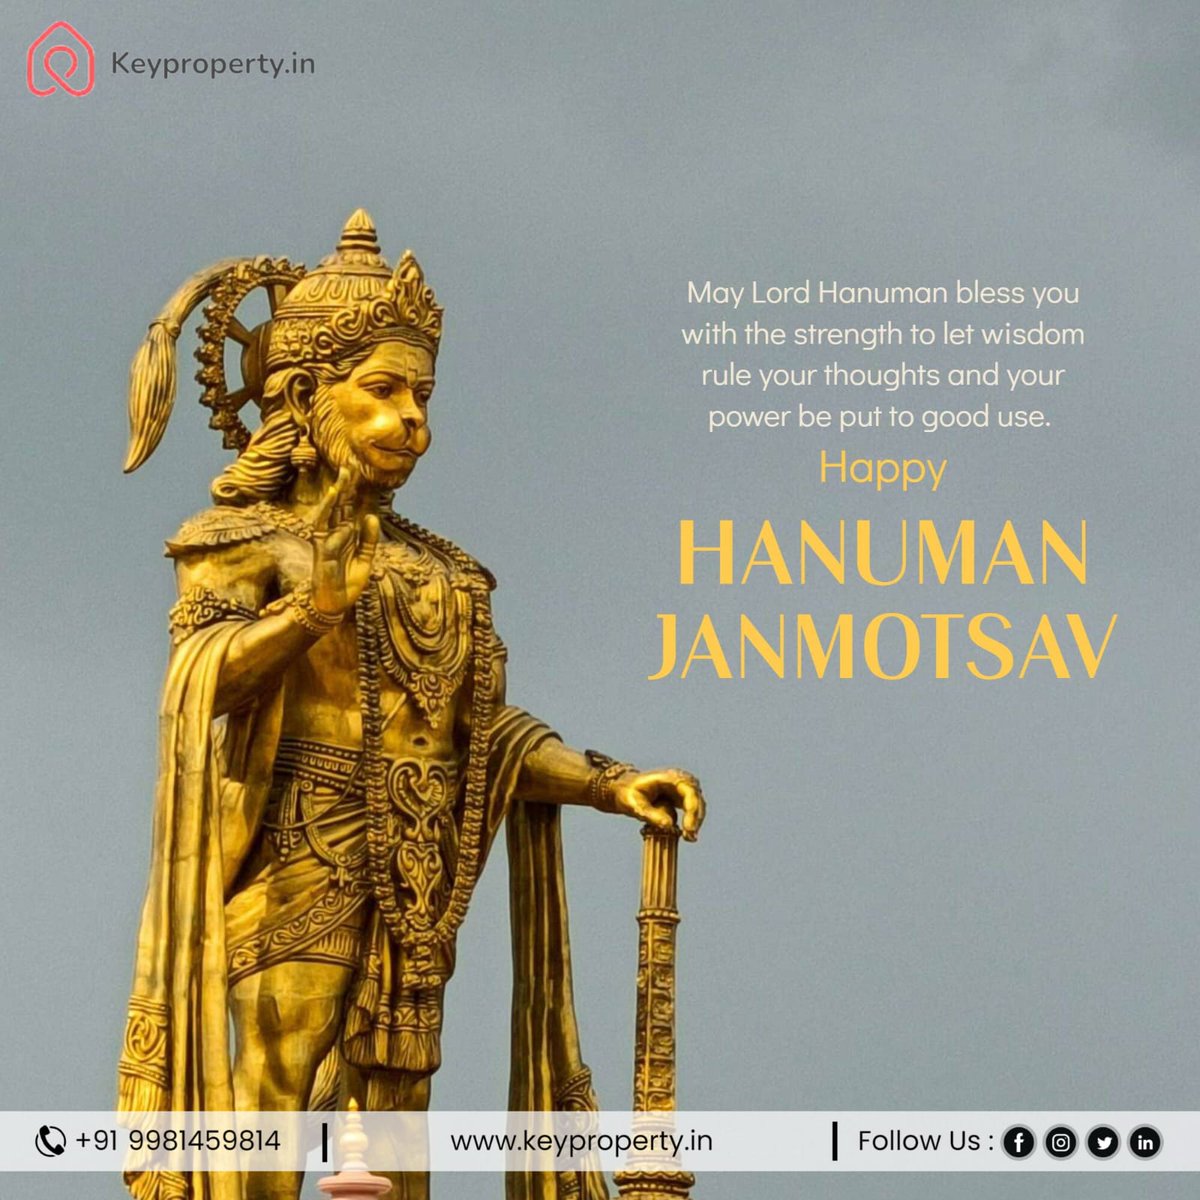 Invoking Blessings: Hanuman Janmotsav at KeyProperty
Visit Now - https://www.keyproperty/
.
.
.
#HanumanJanmotsav #KeyPropertyCelebrates #DevotionInRealEstate
#FestiveSpirit #BlessingsAndProsperity #CommunityGathering #DivineCelebration